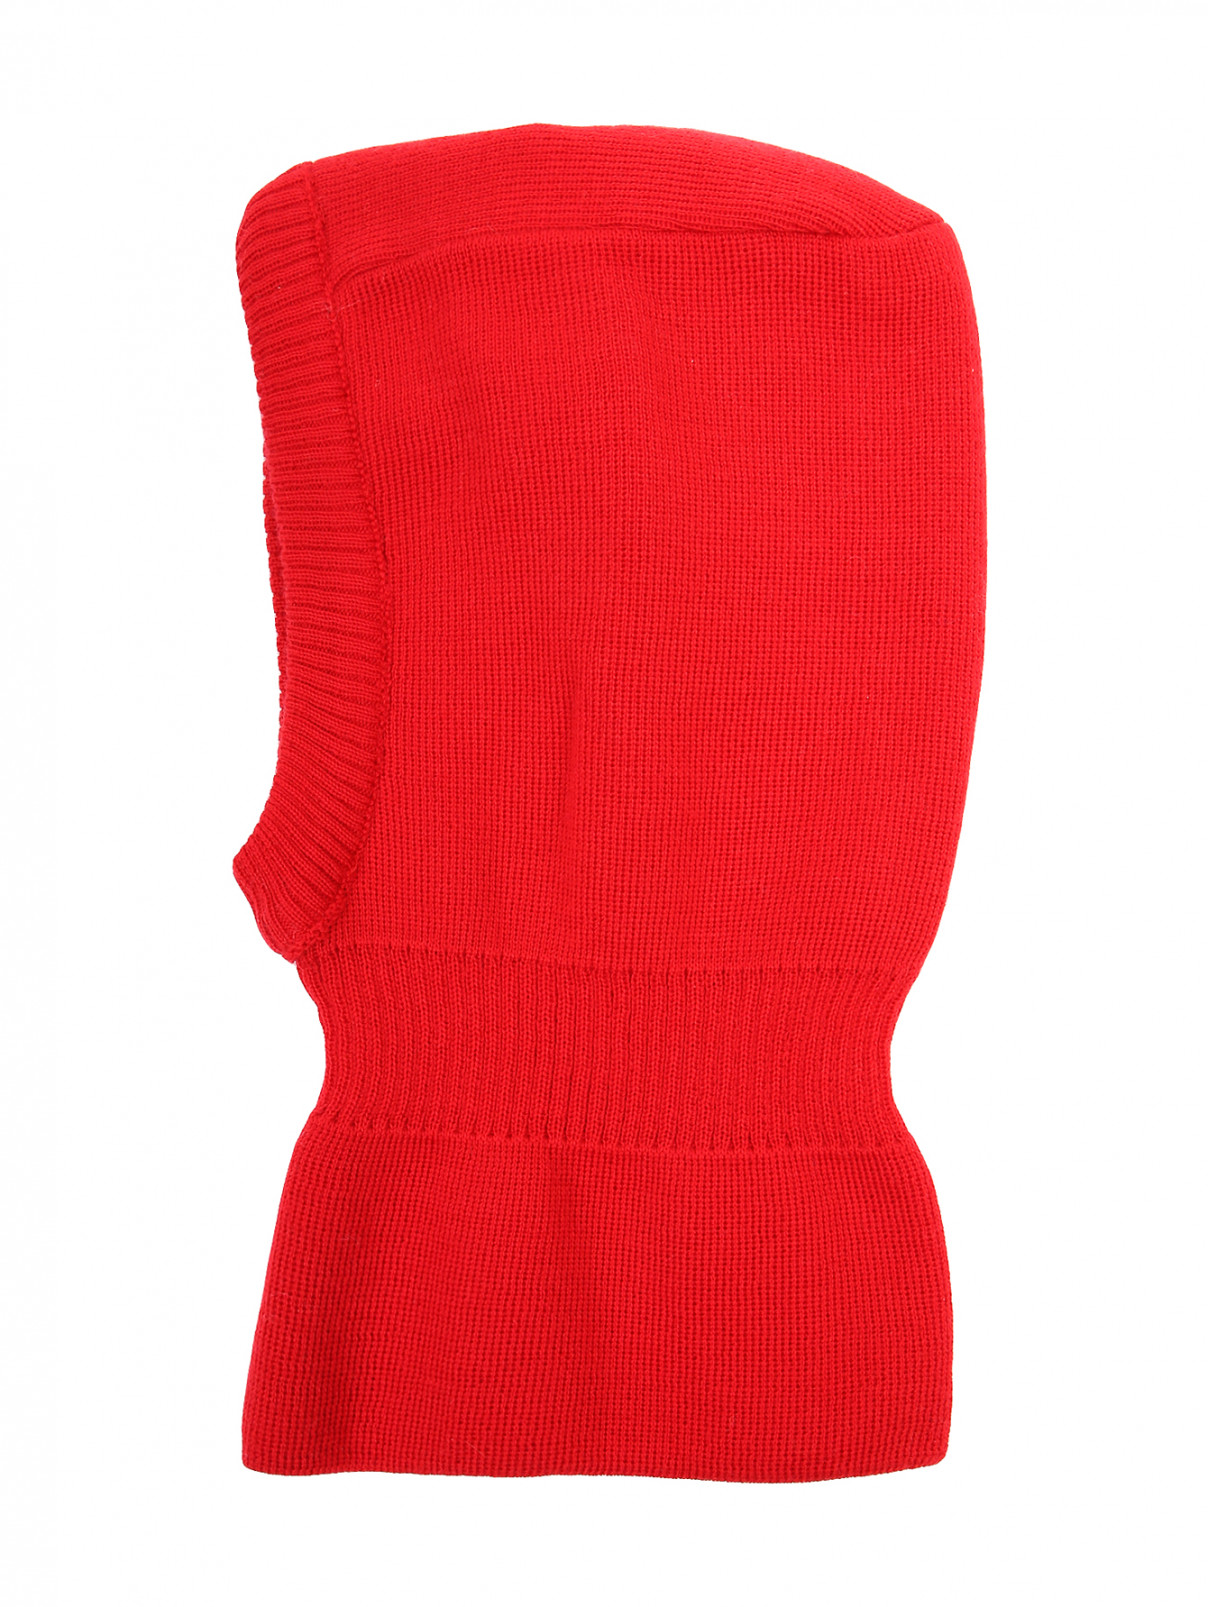 Шапка из шерсти мелкой вязки Maximo  –  Общий вид  – Цвет:  Красный